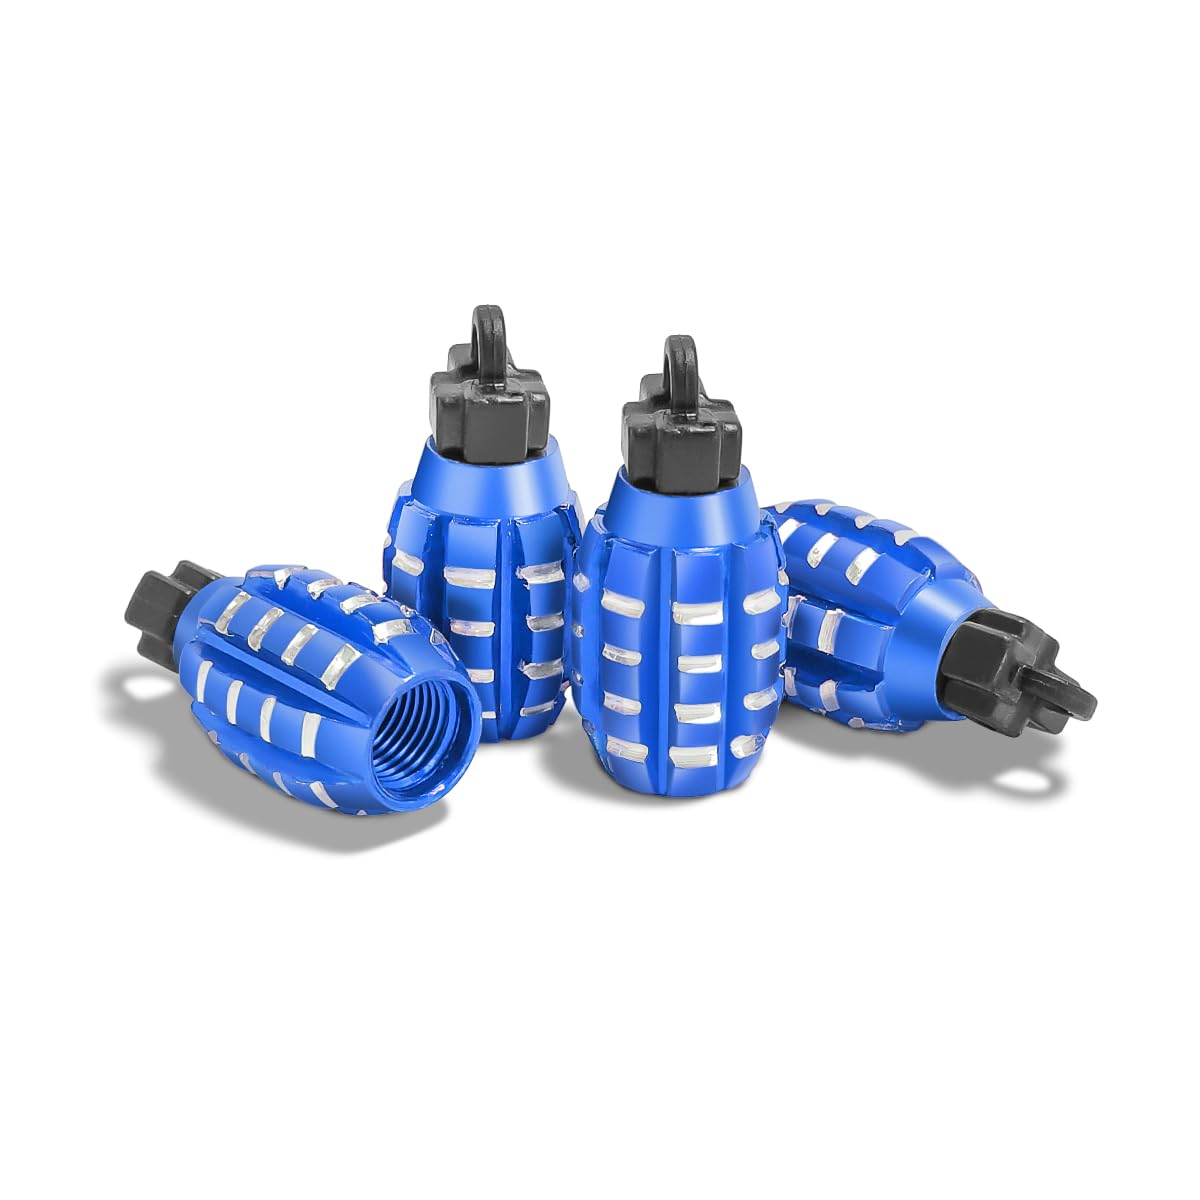 CGEAMDY 4 Stück Ventilkappen in Granatenform, Handgranaten-Stil Aluminium Auto Rreifen Ventilkappen, Handgranate Style Reifen Ventilkappen Für Auto Motorrad (Blau) von CGEAMDY